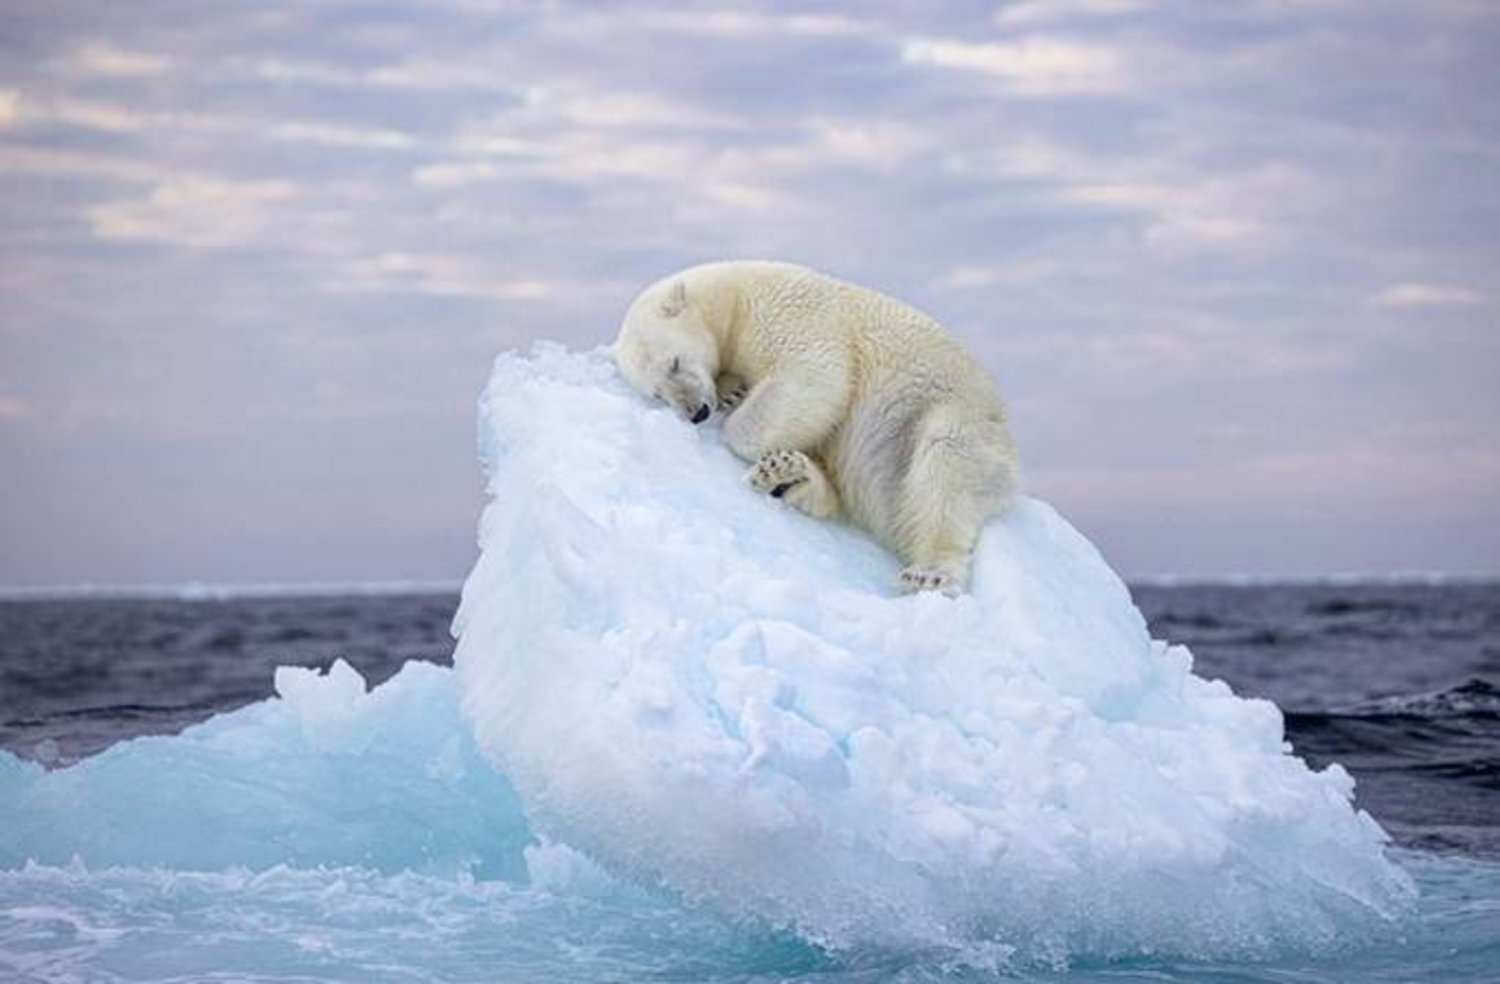 دب قطبي نائم على جبل جليدي (جائزة العام لتصوير الحياة البرية)